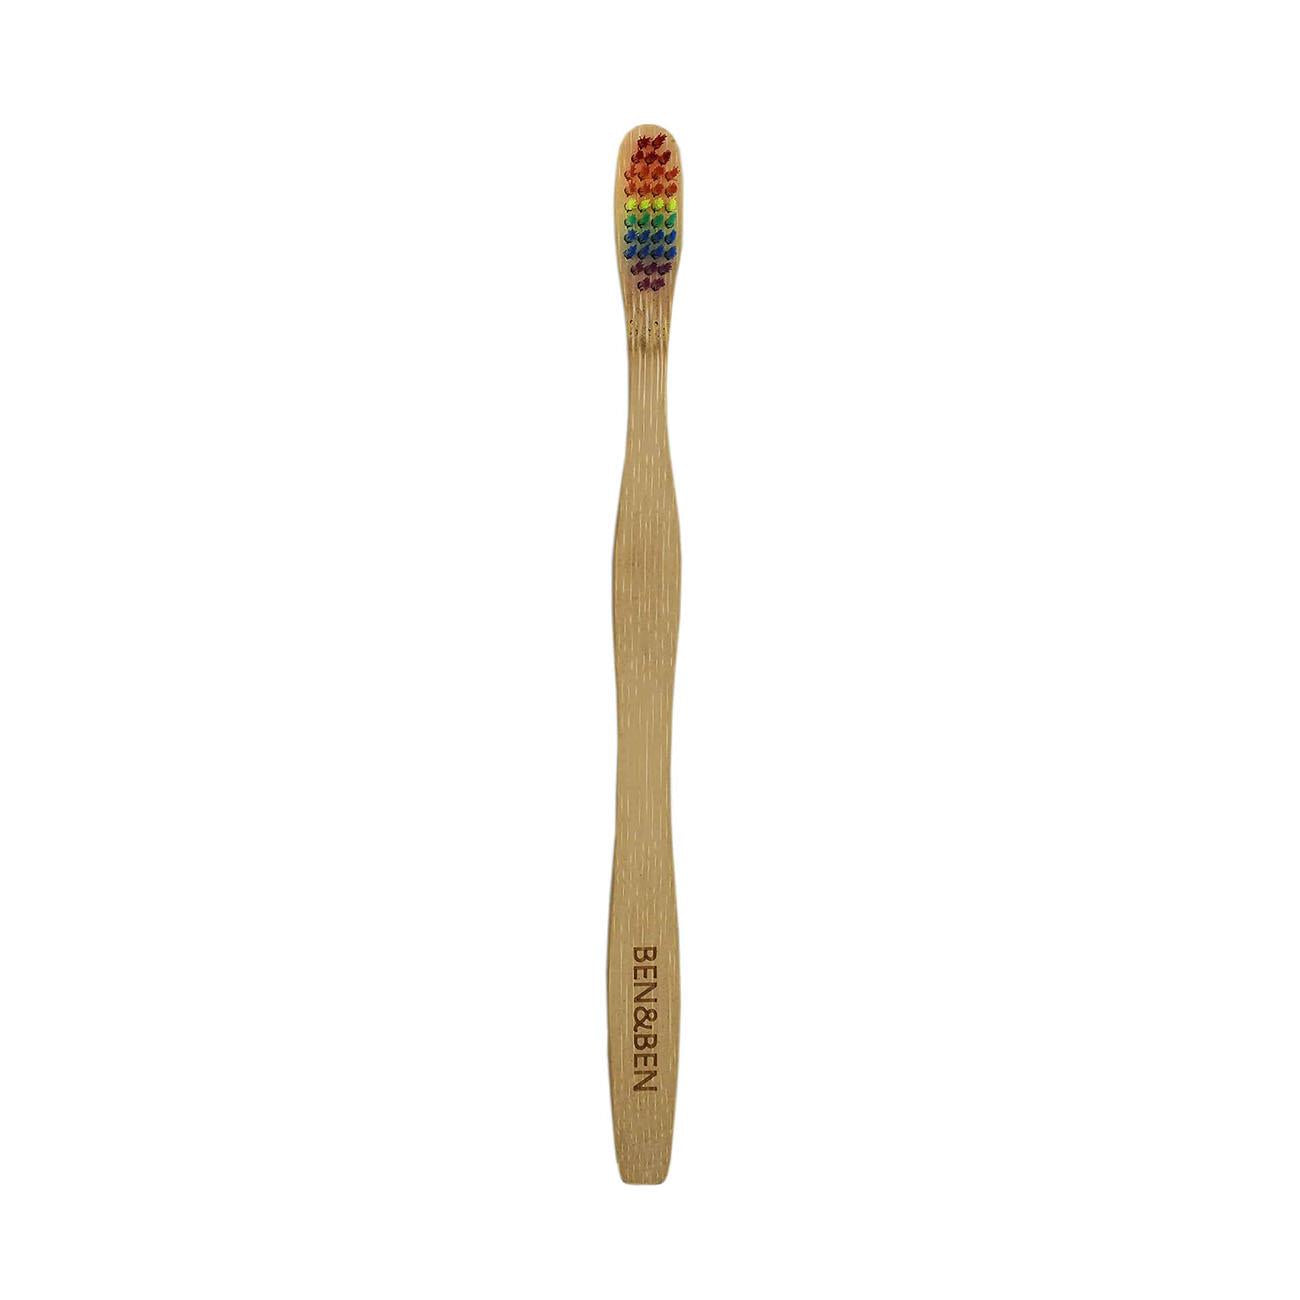 Ben & Ben Equality Bamboo Toothbrush